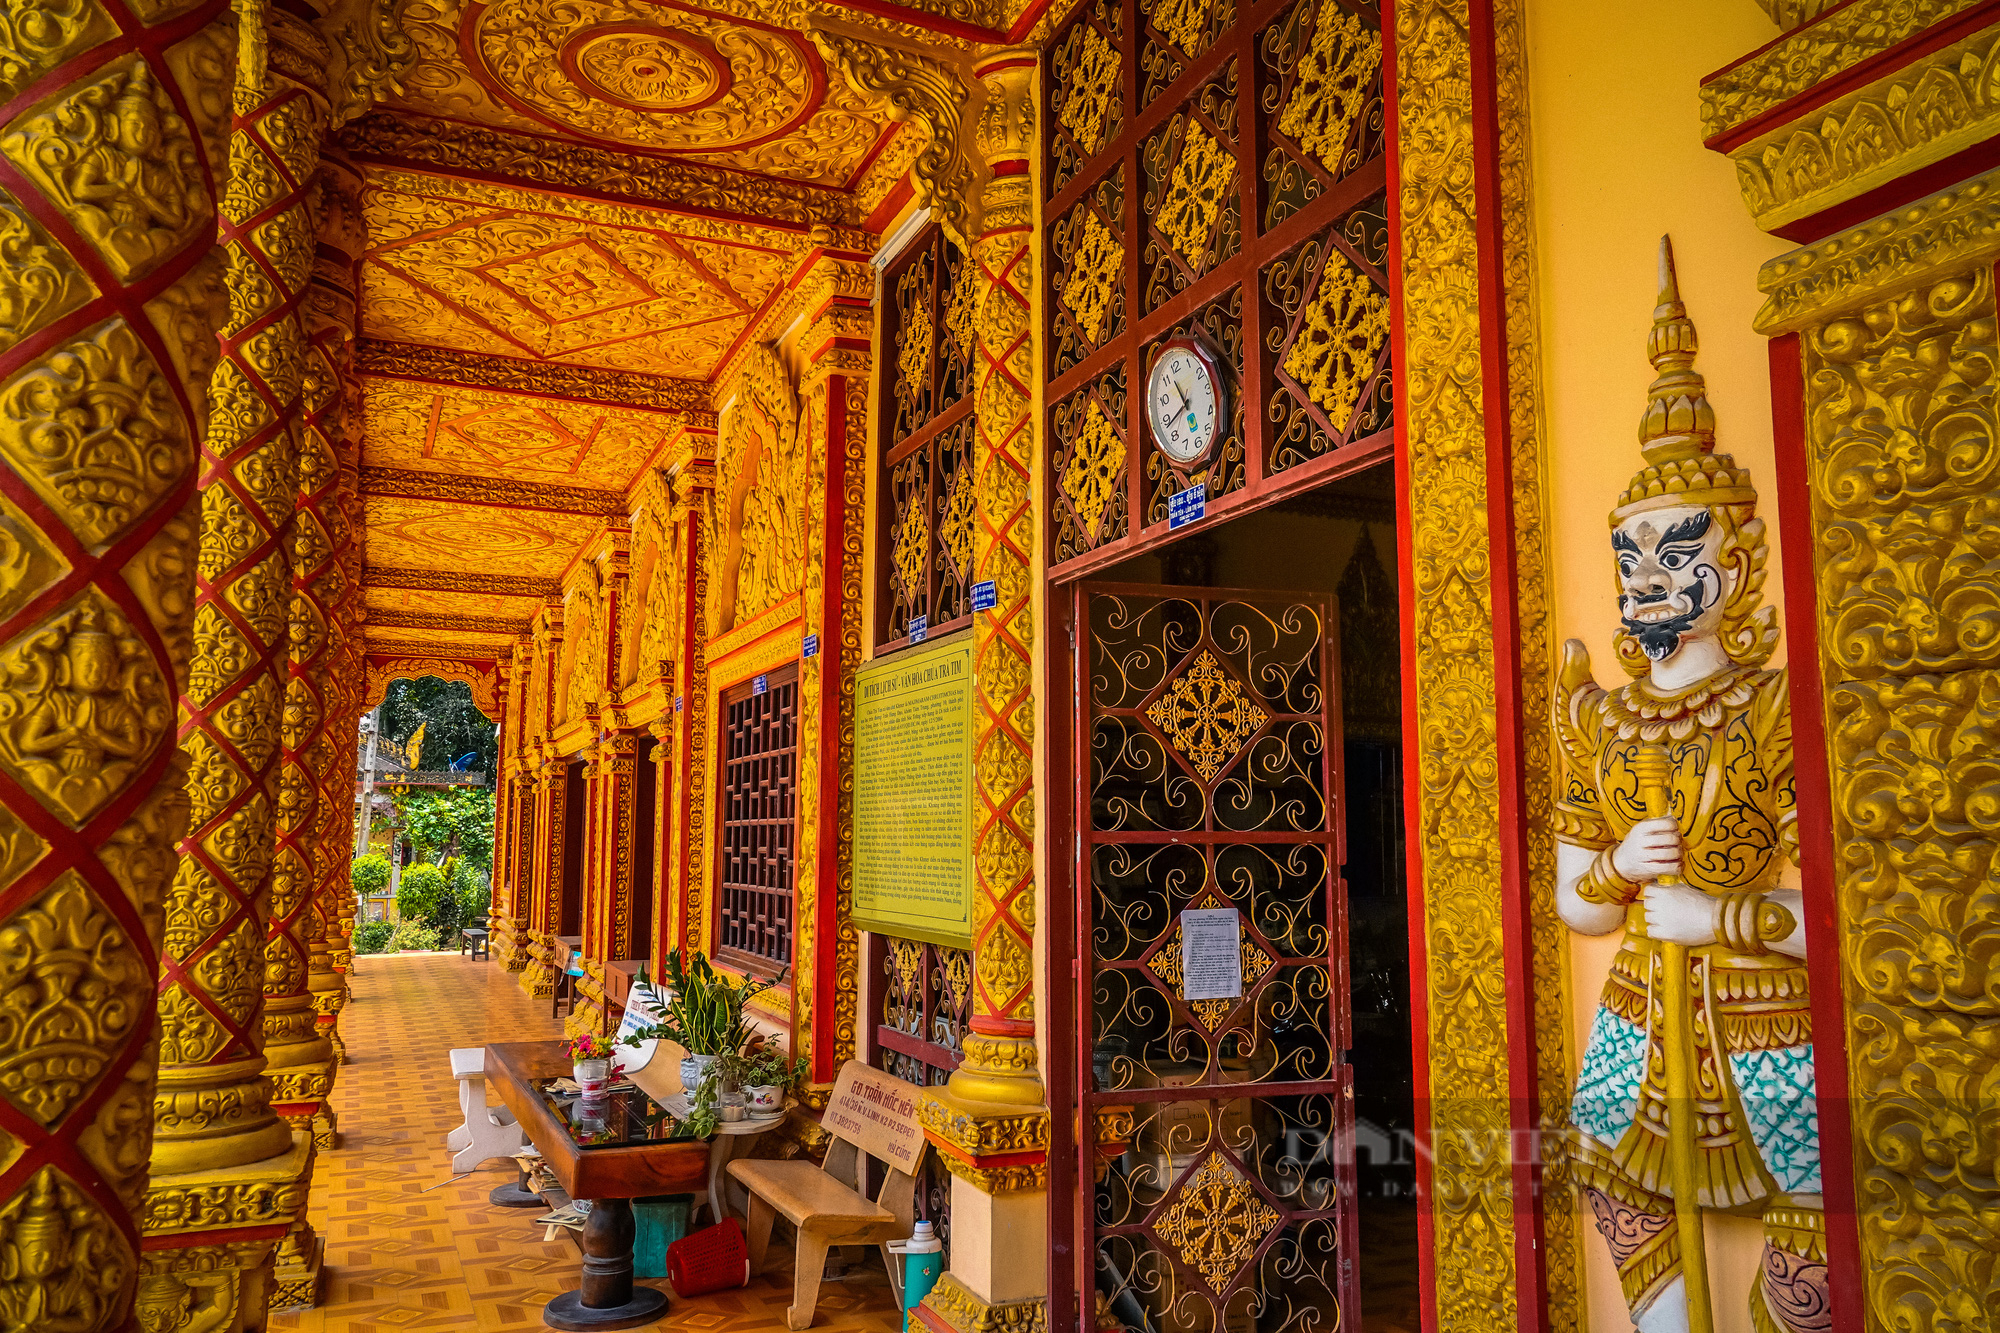 Ngôi chùa Khmer trăm năm tuổi với hàng trăm cây sao cổ thụ “độc” nhất Sóc Trăng - Ảnh 11.